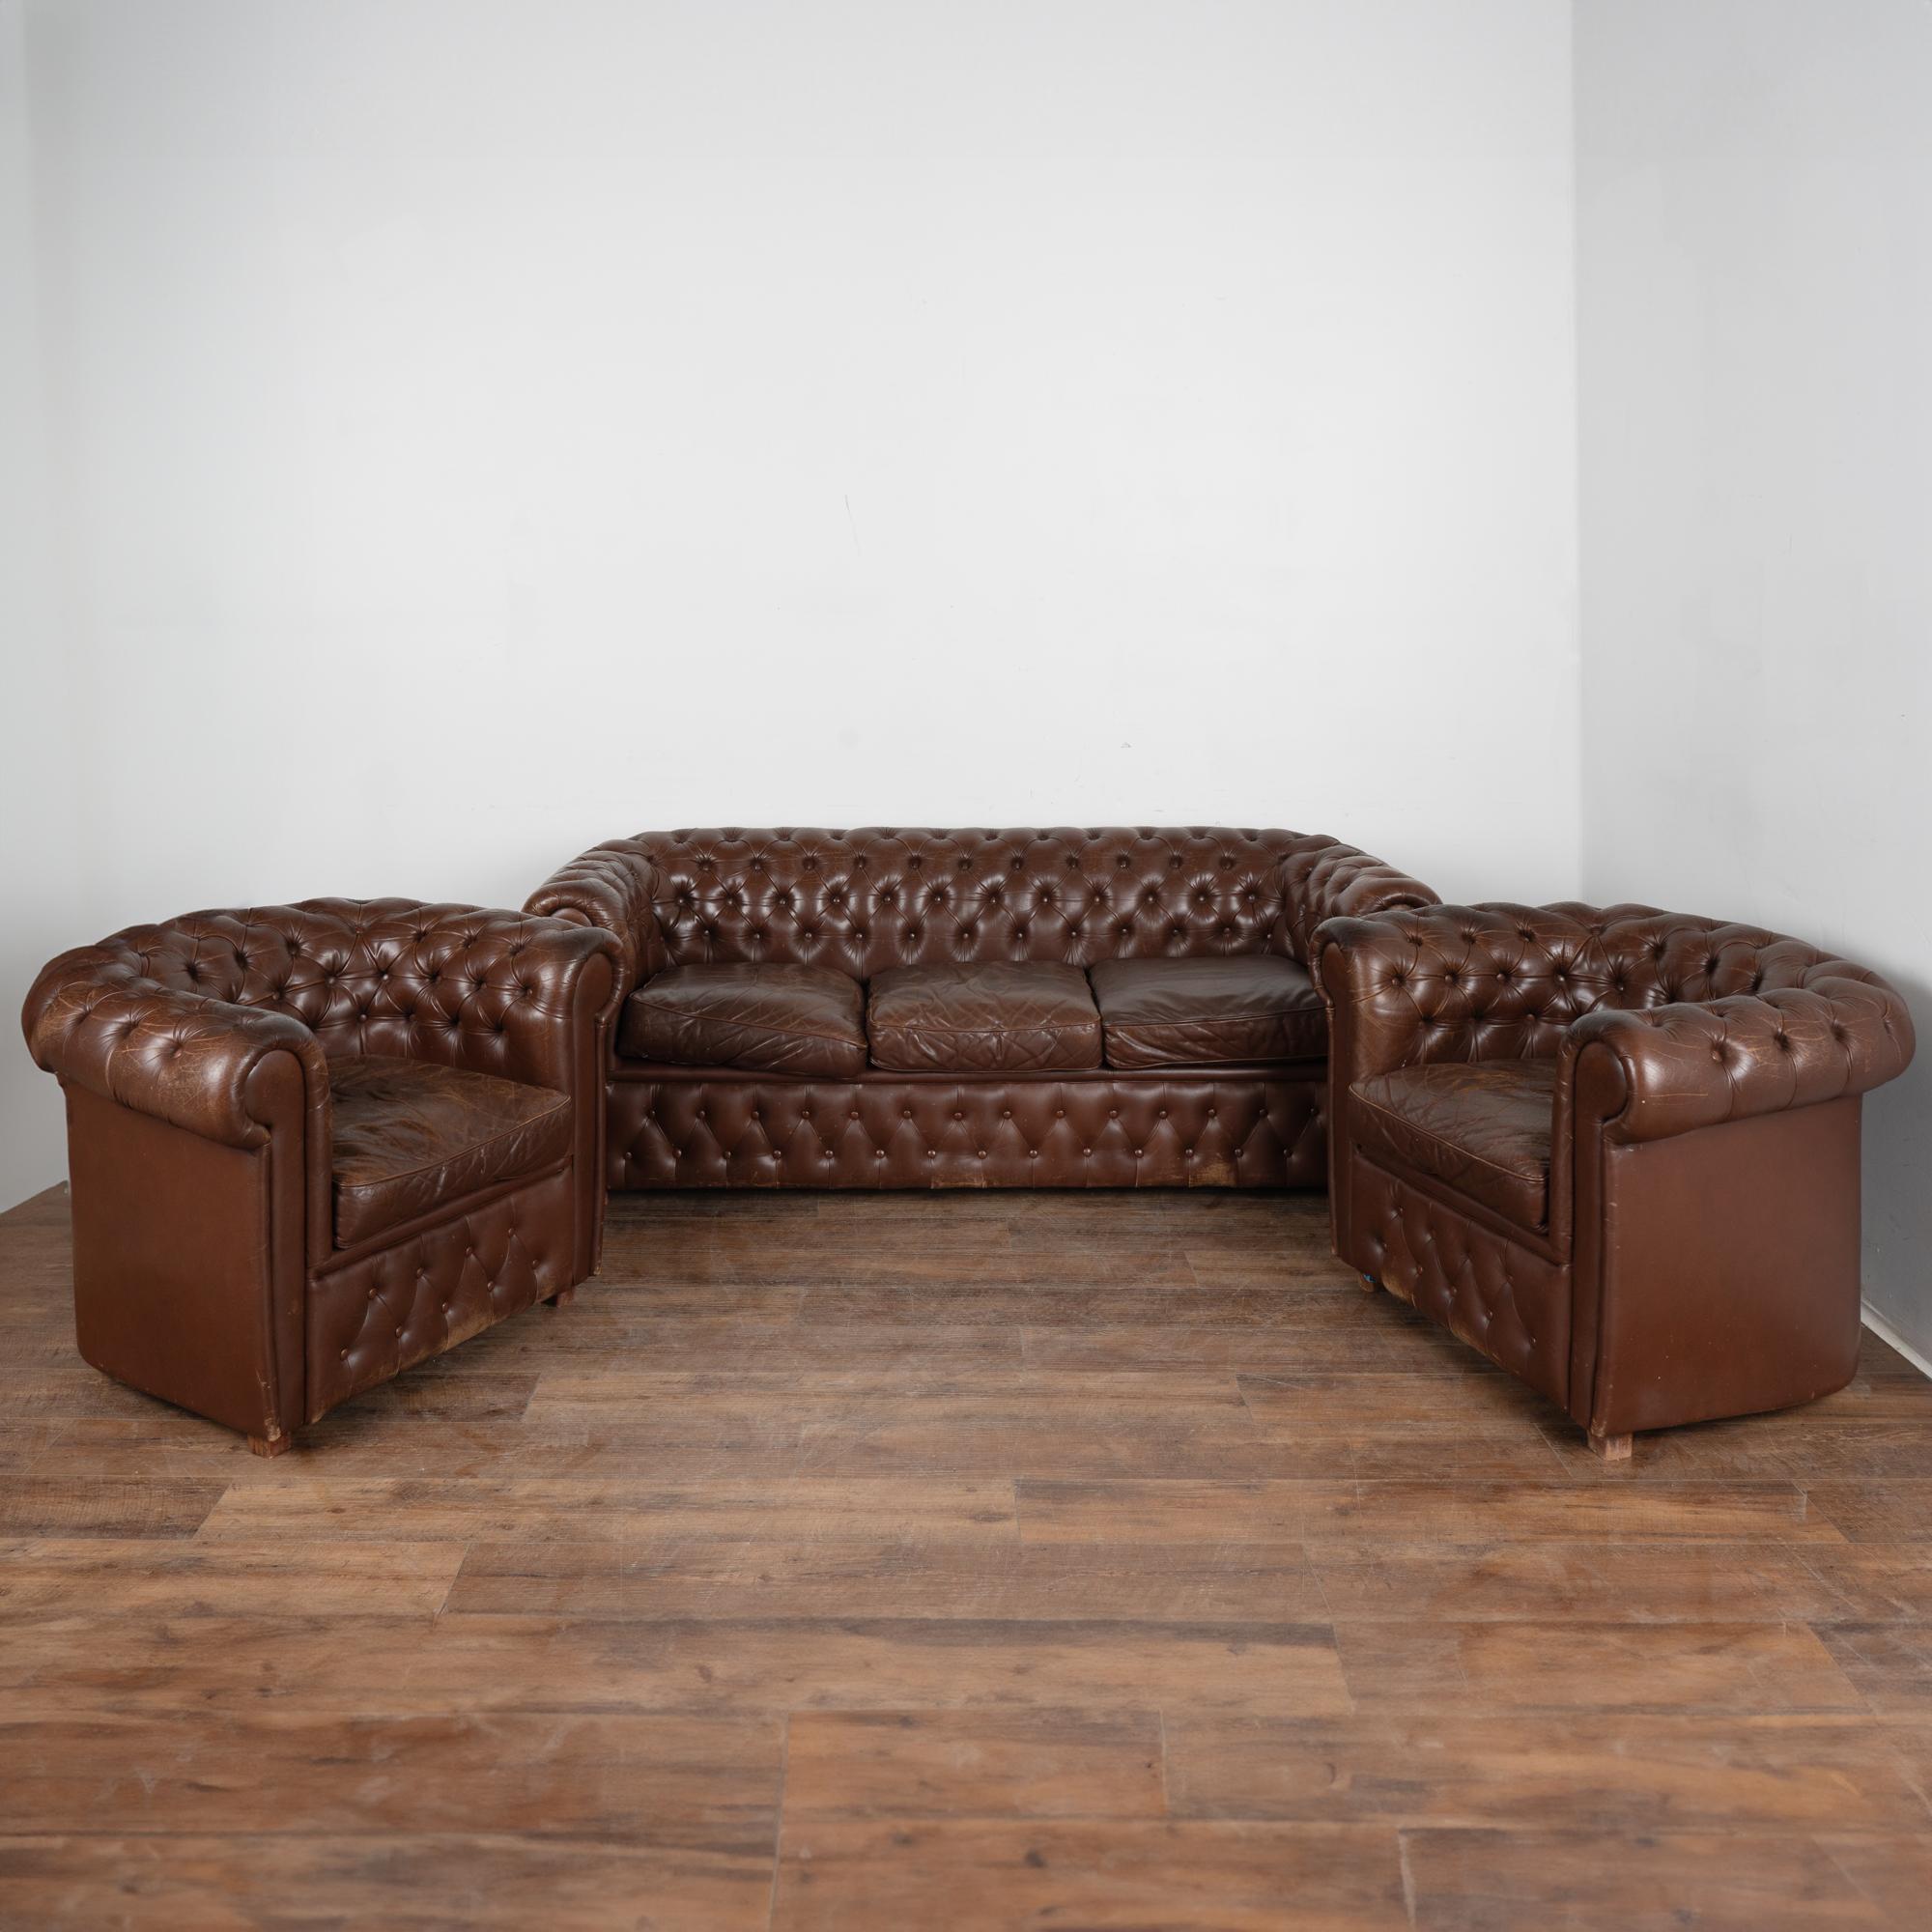 Set (3) Vintage Leder Chesterfield-Stil Sofa und Paar Club Sessel.
Das braune Leder hat traditionelle, getuftete und geknöpfte Akzente und gerollte Arme, Blockfüße aus Hartholz.
Verkauft in gebrauchtem Vintage-Zustand.
Mehrere Schrammen, Kratzer,